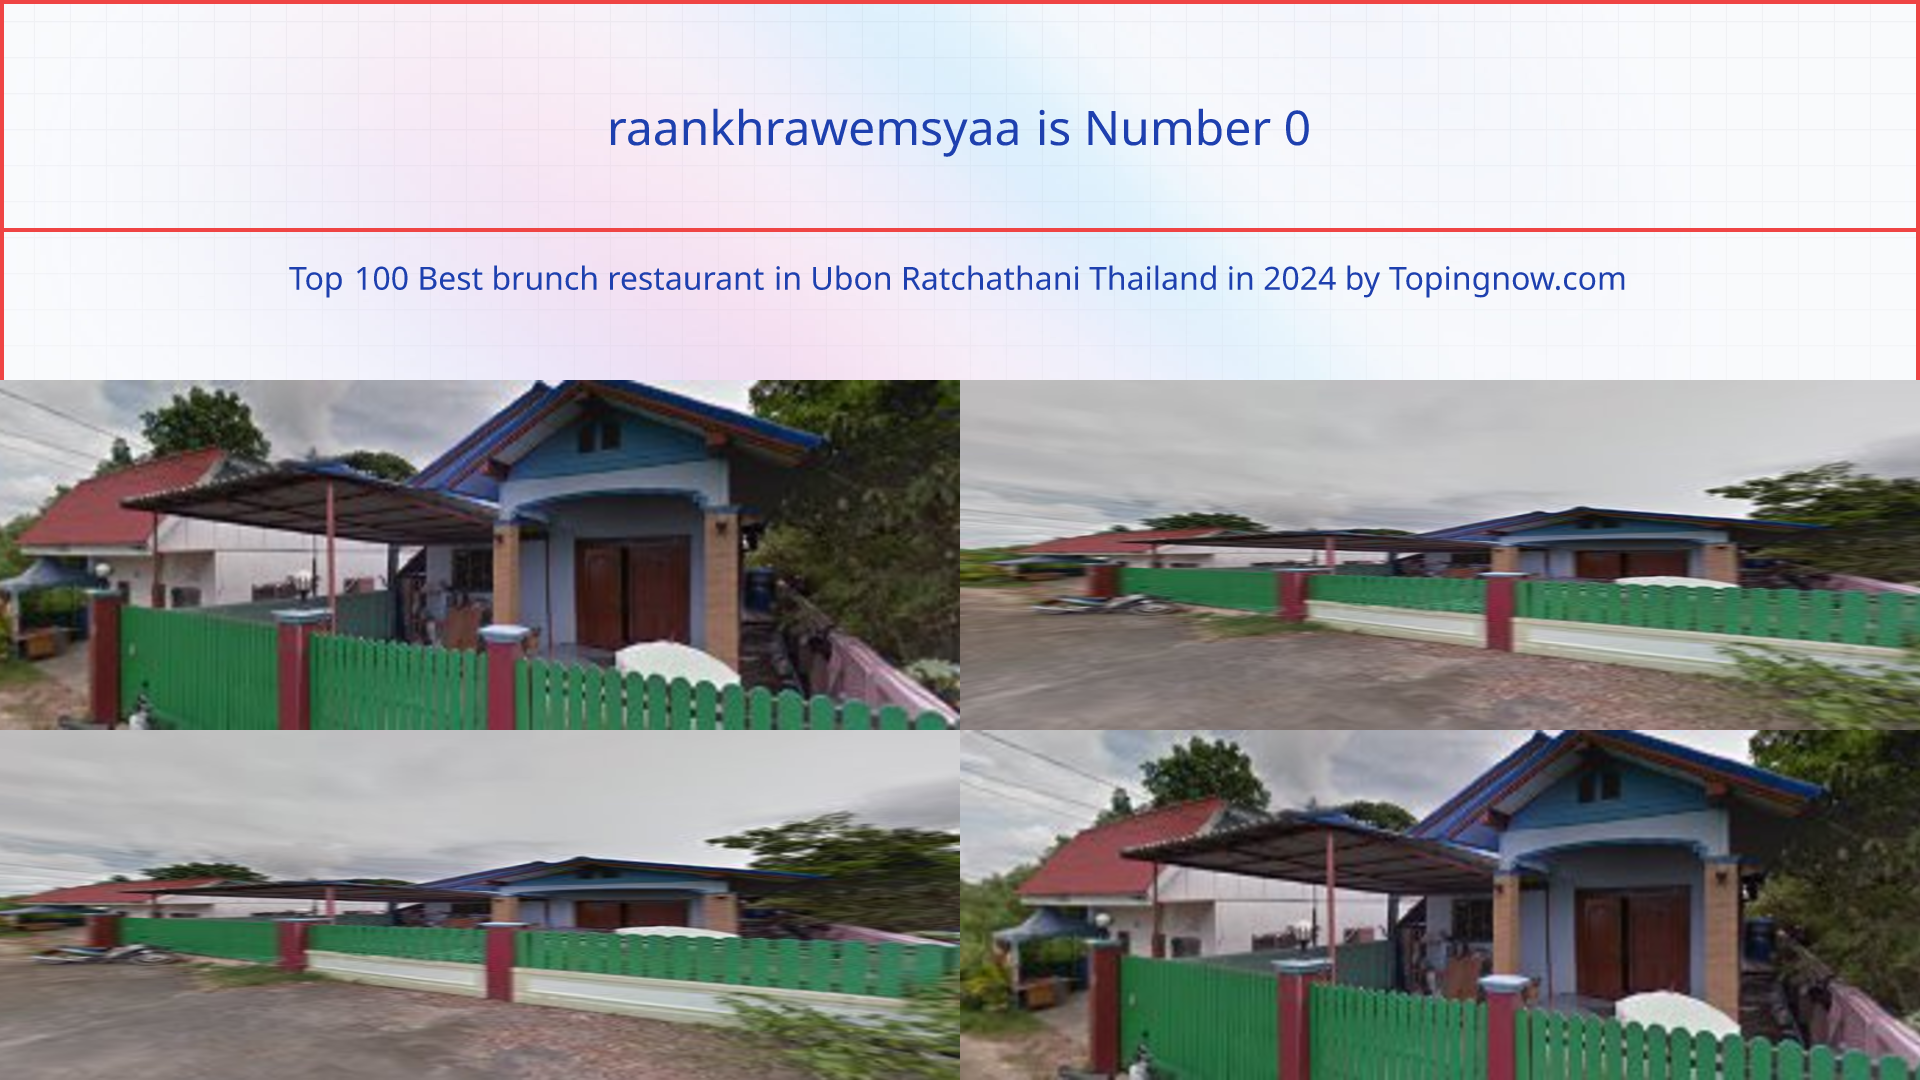 raankhrawemsyaa: Top 100 Best brunch restaurant in Ubon Ratchathani Thailand in 2024